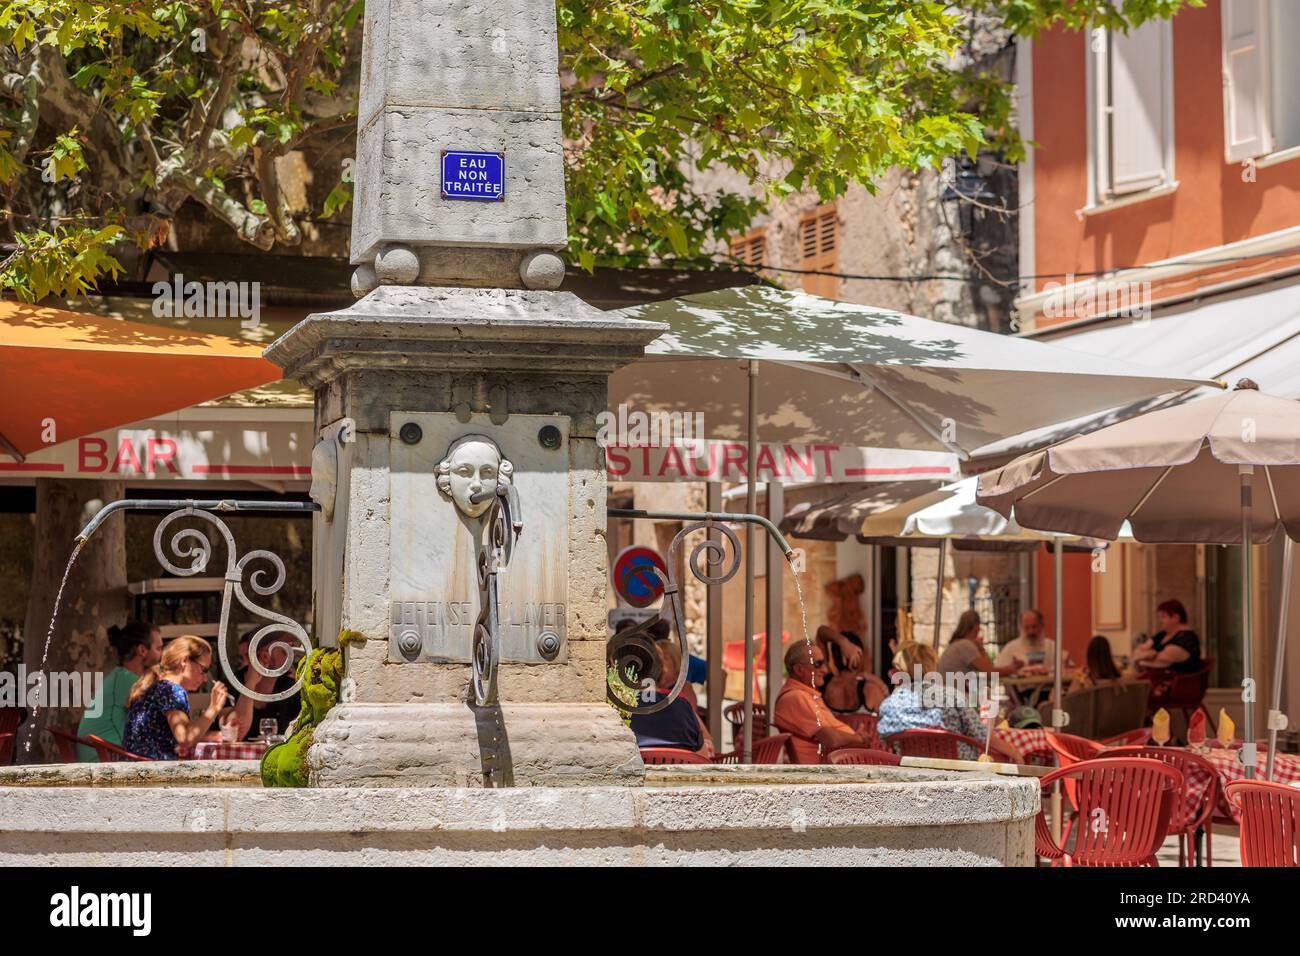 Cafe and resturants in Aiguines, Brignoles, Parc Naturel Regional du Verdon, Var, Provence-Alpes-Cote d’Azur, France, Stock Photo